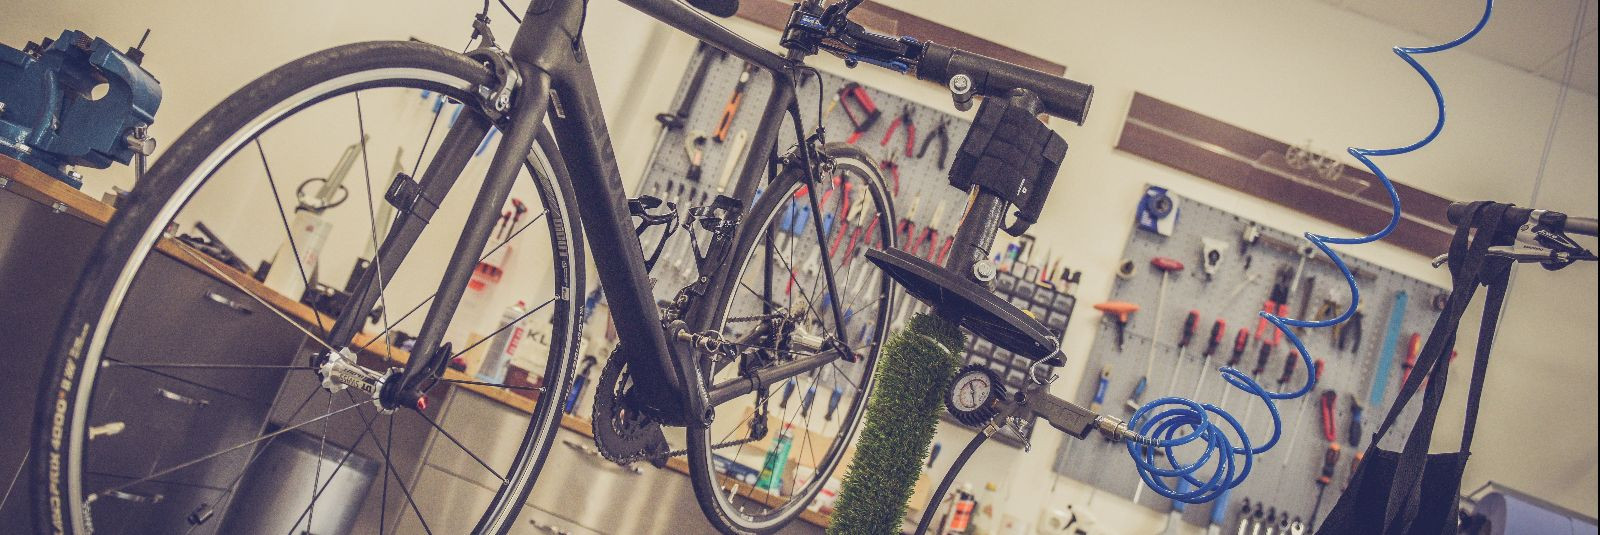 Trigon Auto OU soovitab, et iga jalgrattaomanik peaks regulaarselt hooldama oma jalgratast, et tagada ohutu ja mugav sõidukogemus ning pikendada jalgratta kasut